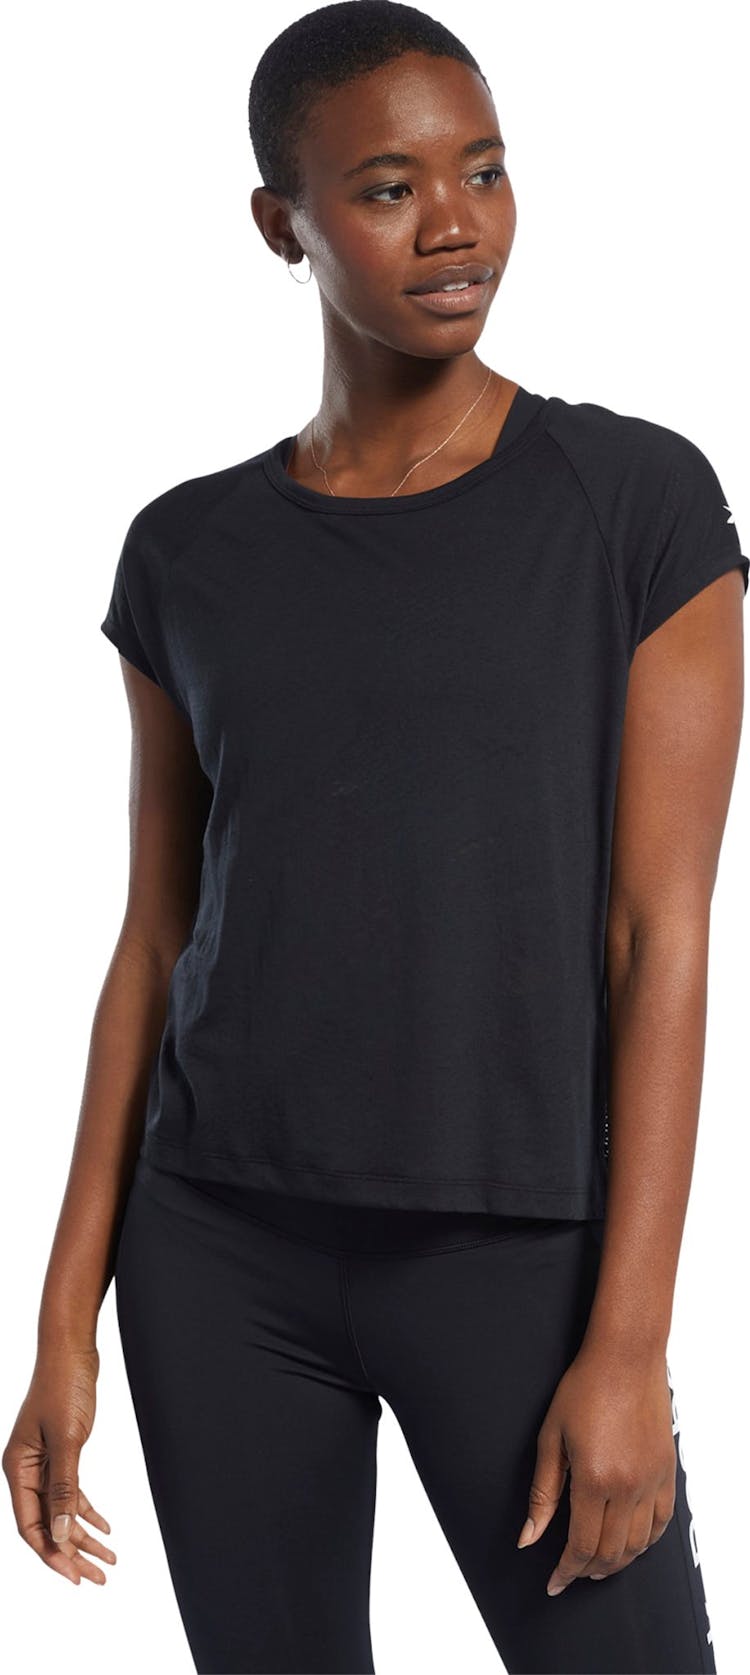 Numéro de l'image de la galerie de produits 3 pour le produit T-shirt Burnout - Femme